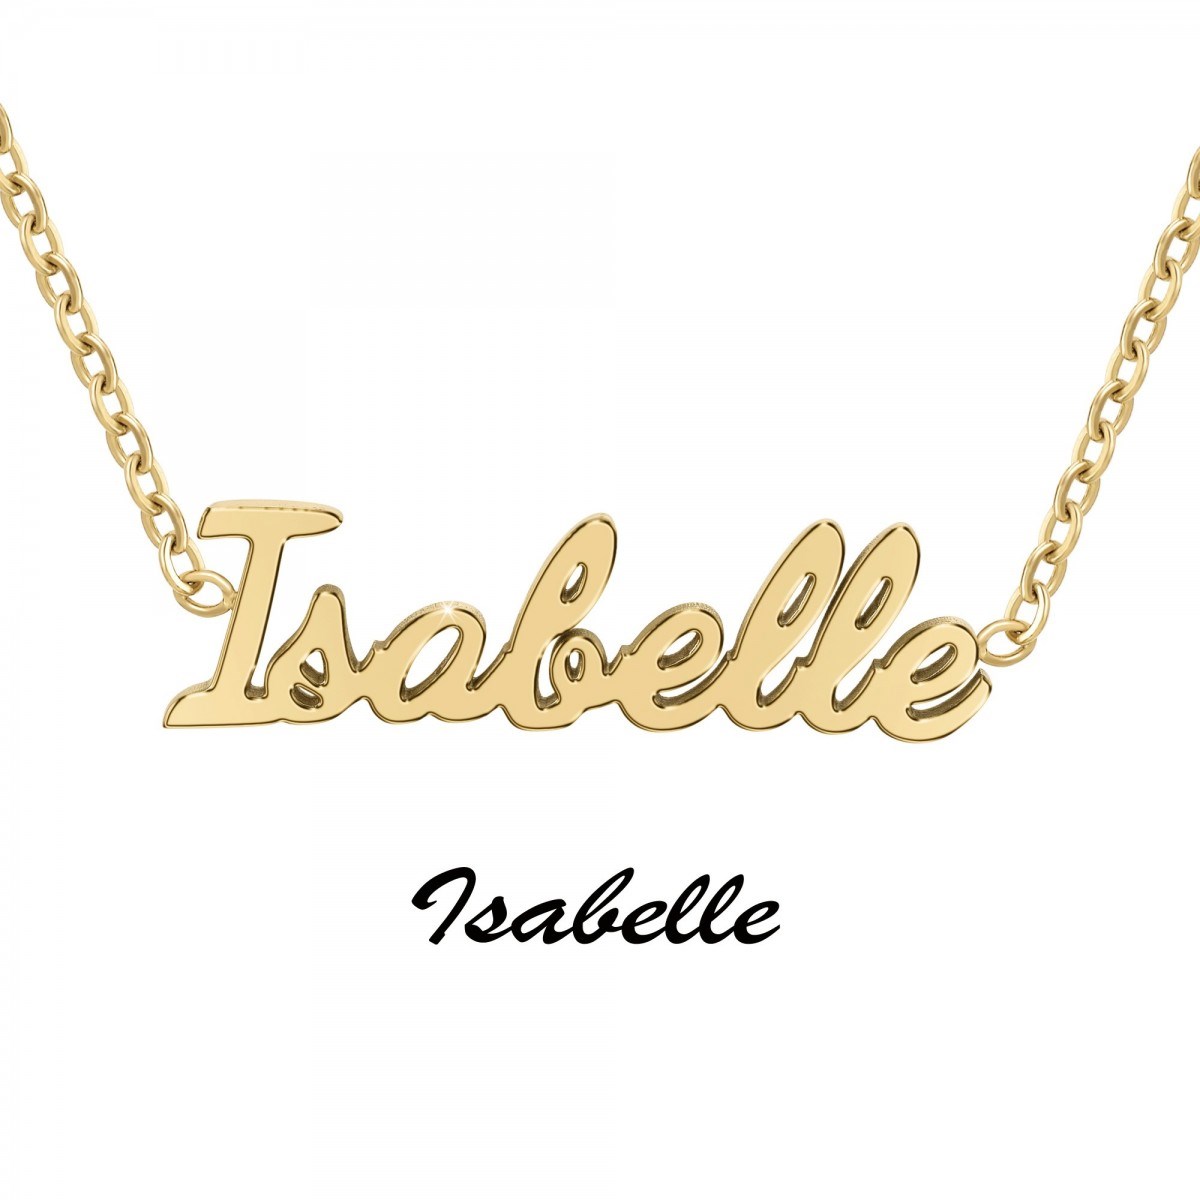 Isabelle - Collier prénom - vue 3